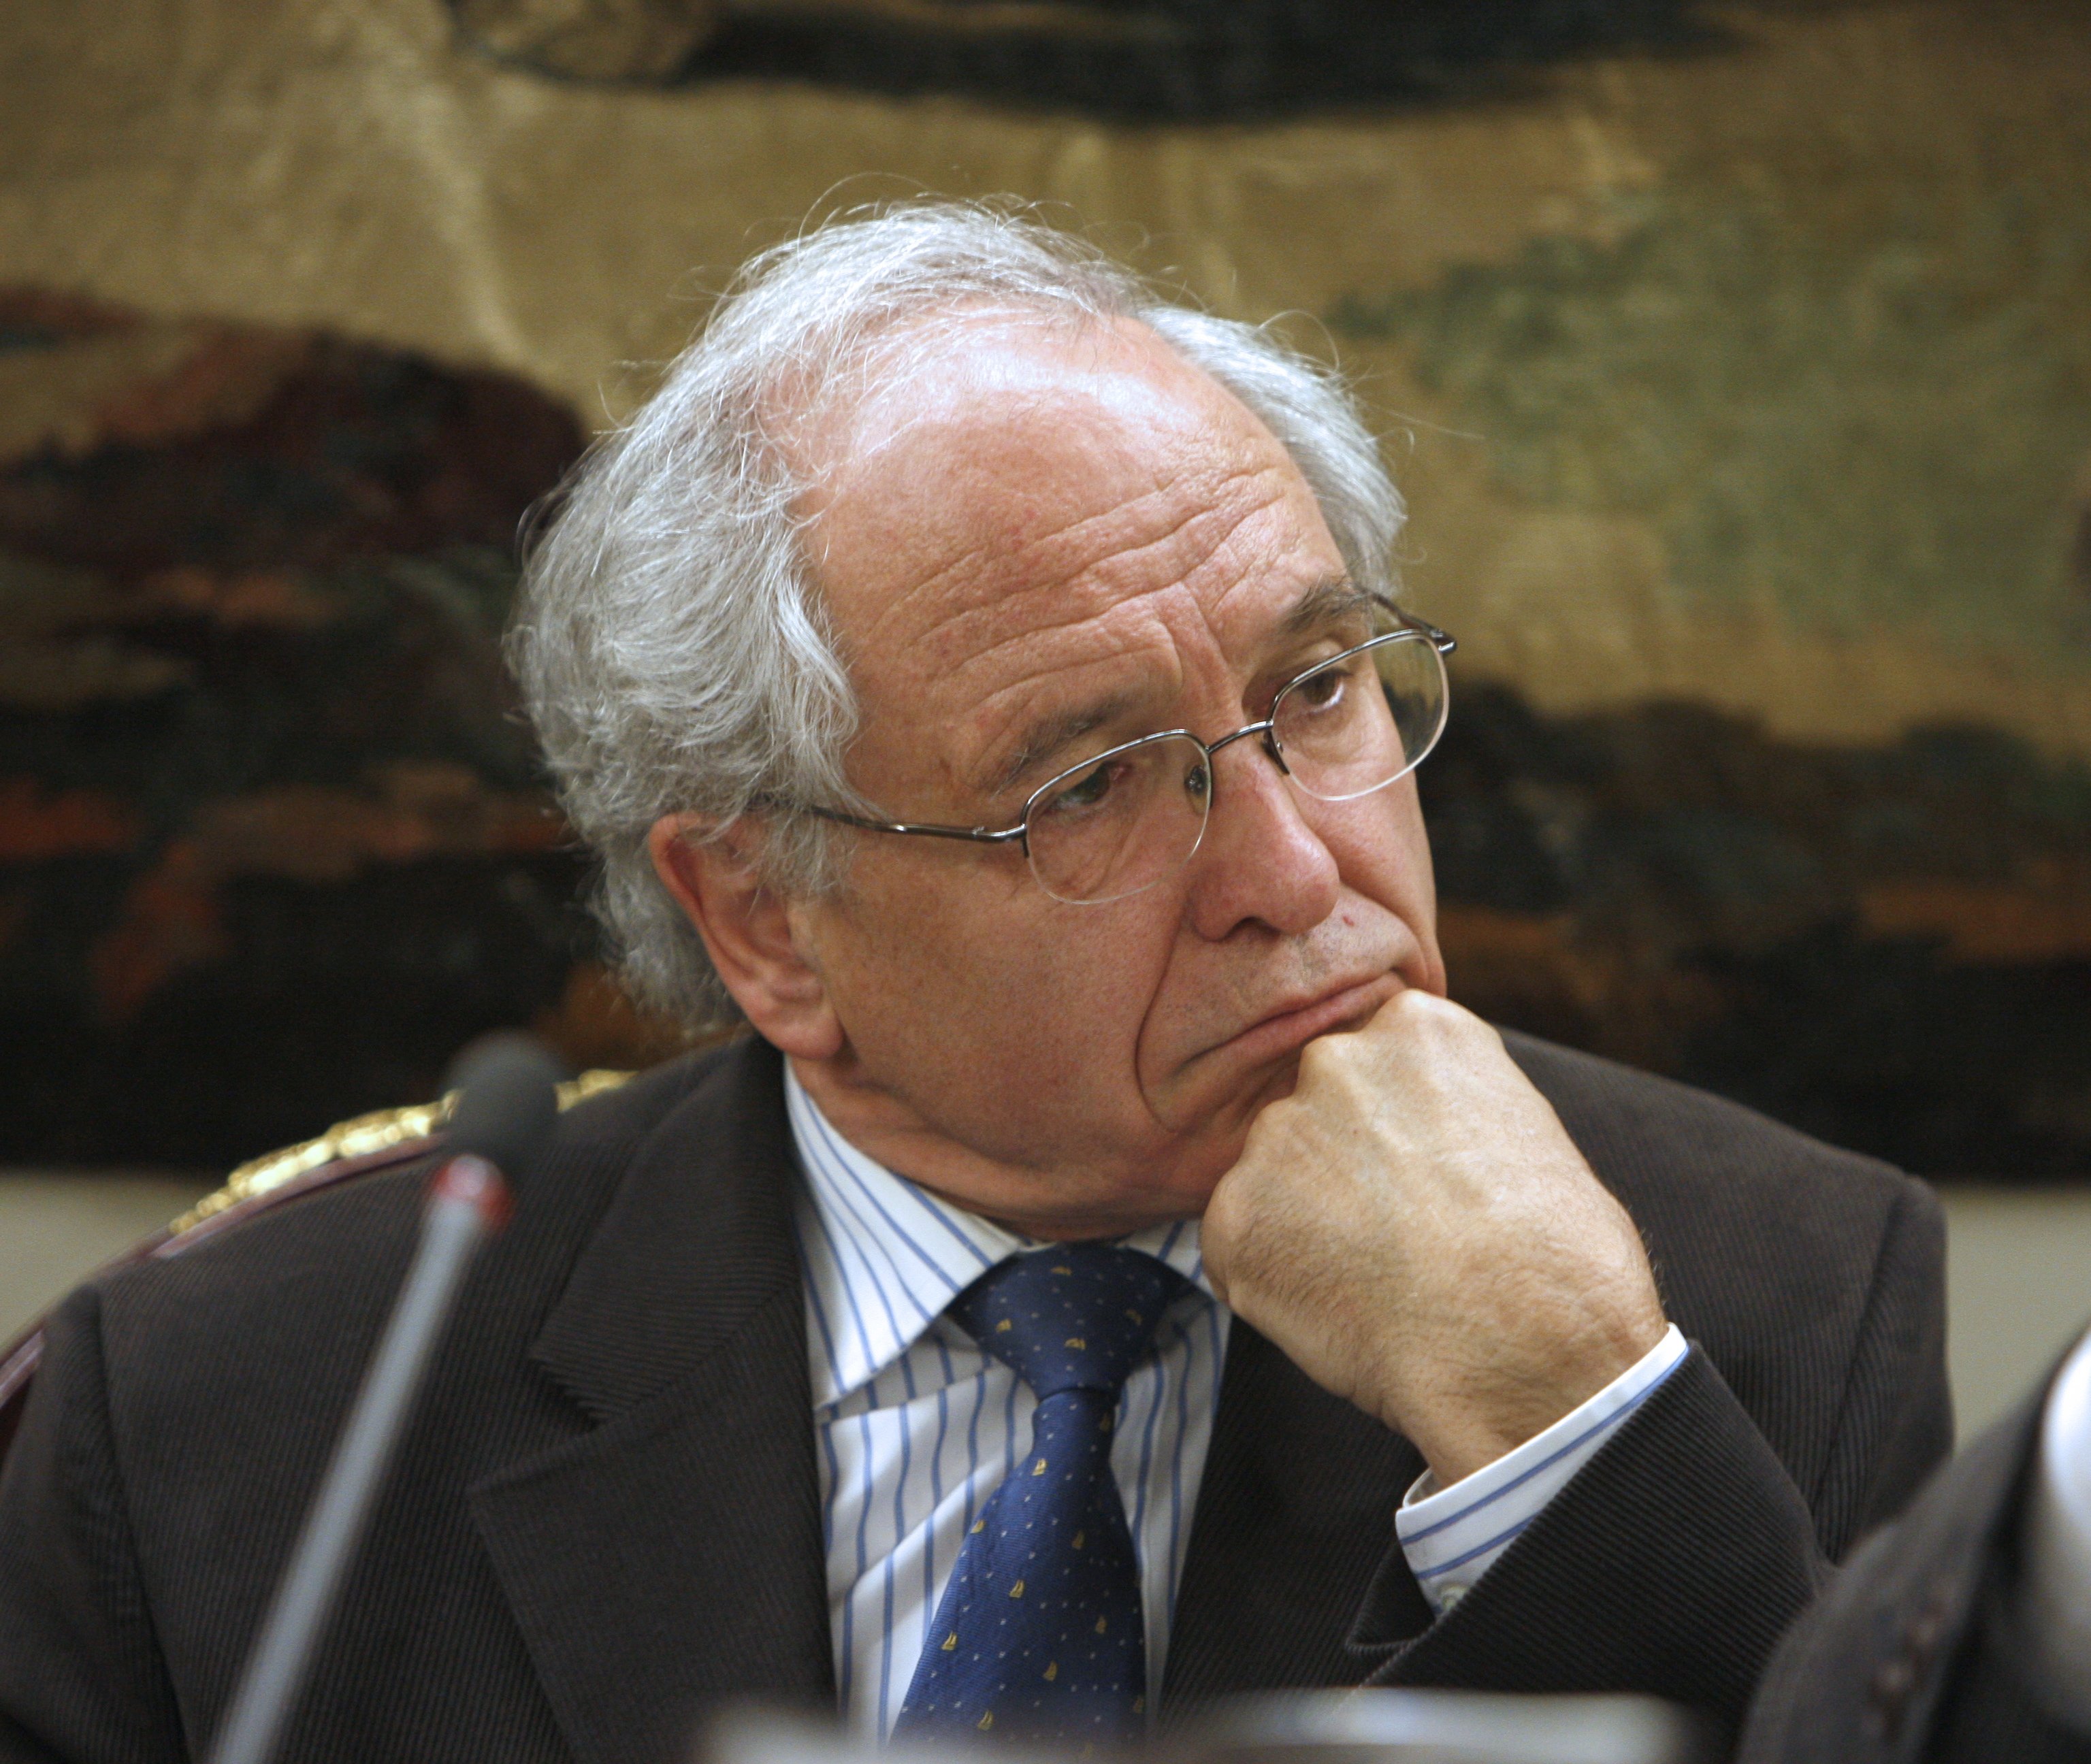 L'historiador Álvarez Junco defensa un Estat federal per encabir-hi Catalunya